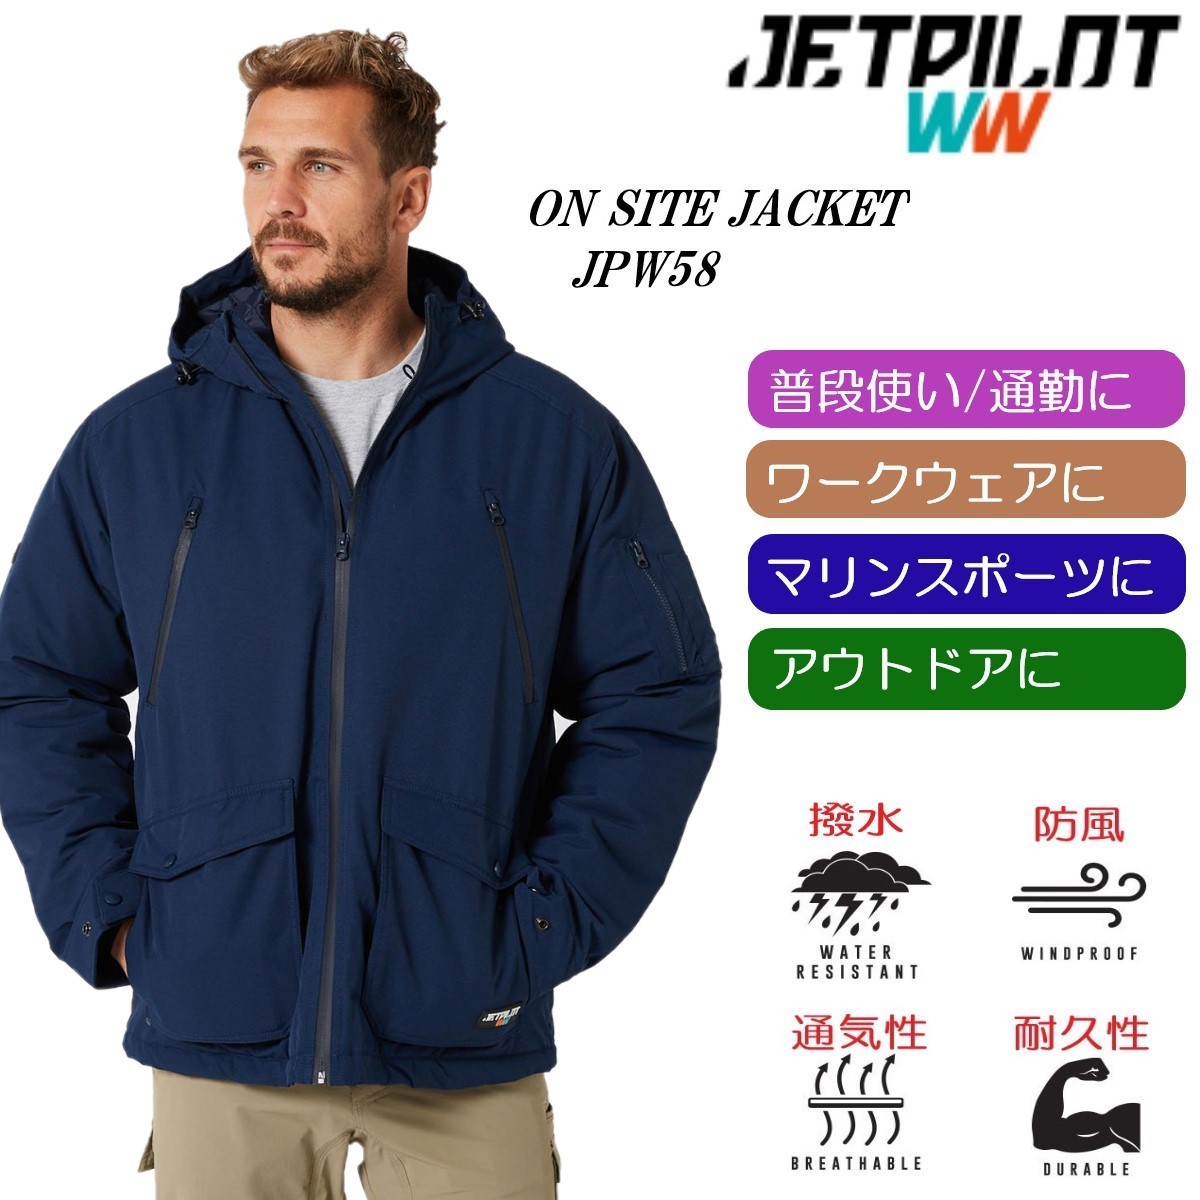 ジェットパイロット JETPILOT 2021 マリンコート 送料無料 オンサイトジャケット JPW58 ネイビー L 撥水 防風 マリン ワークウェア